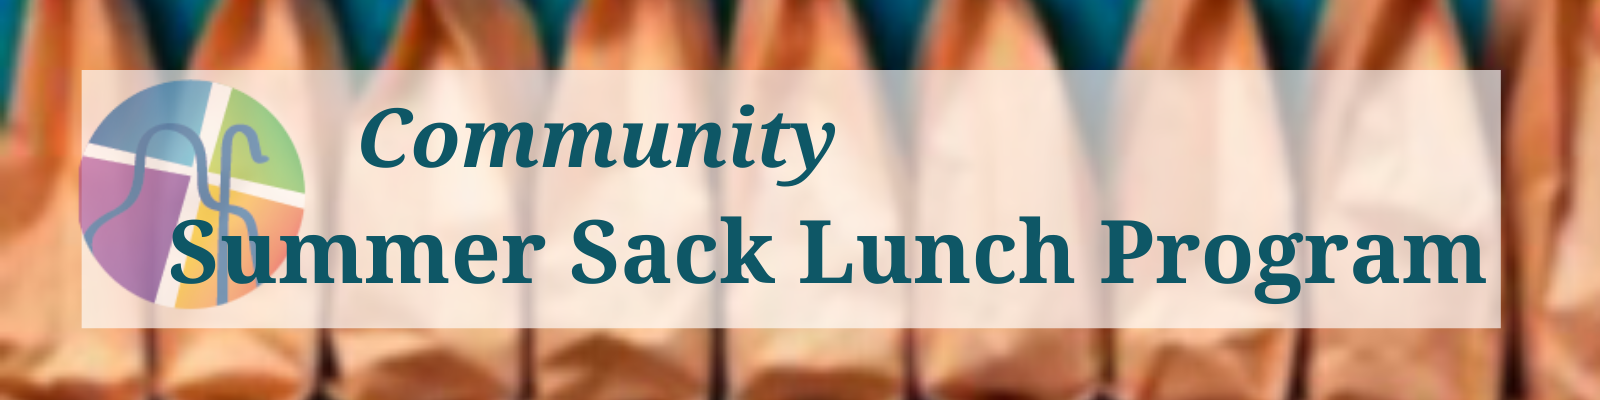 Summer Sack Lunch Program